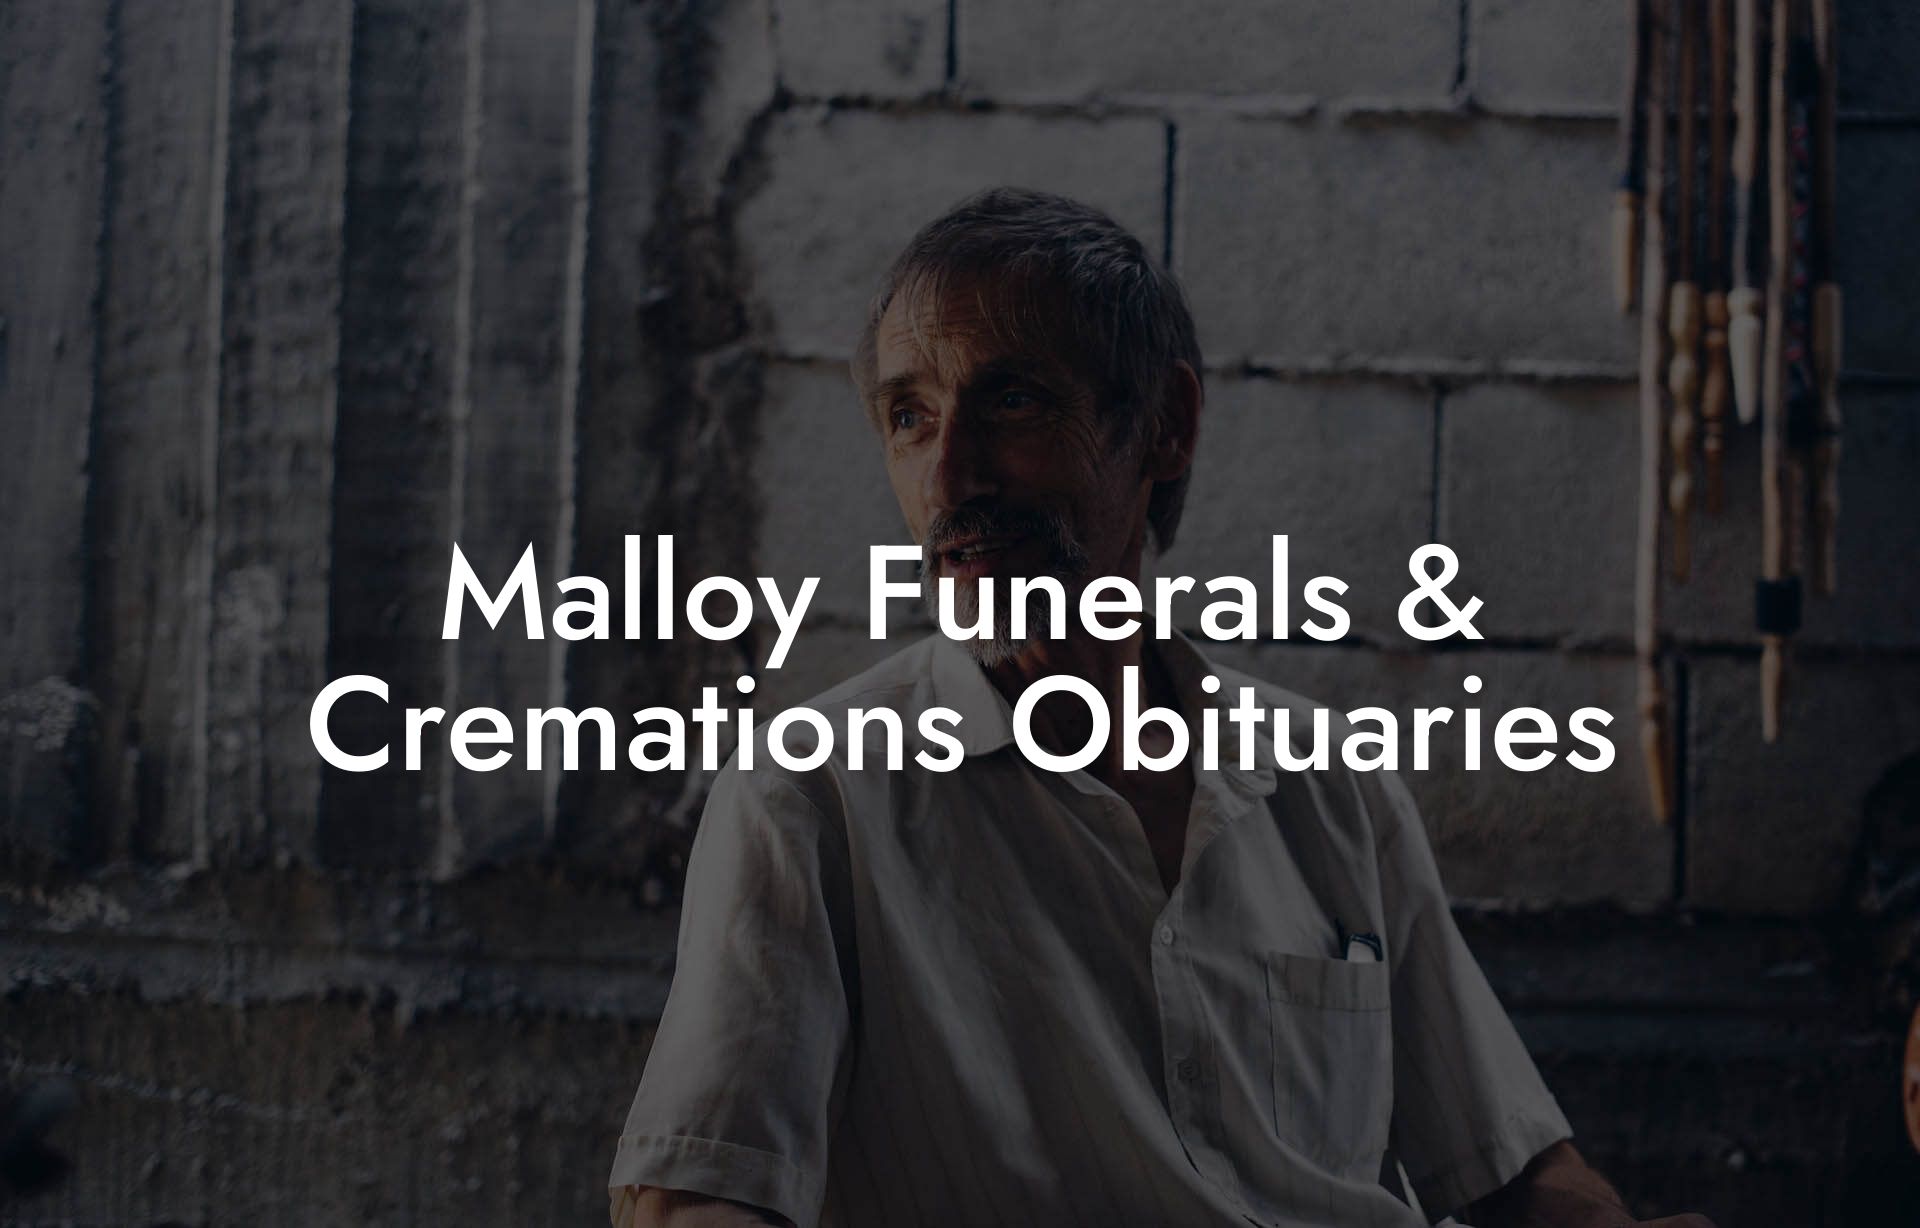 Malloy Funerals & Cremations Obituaries